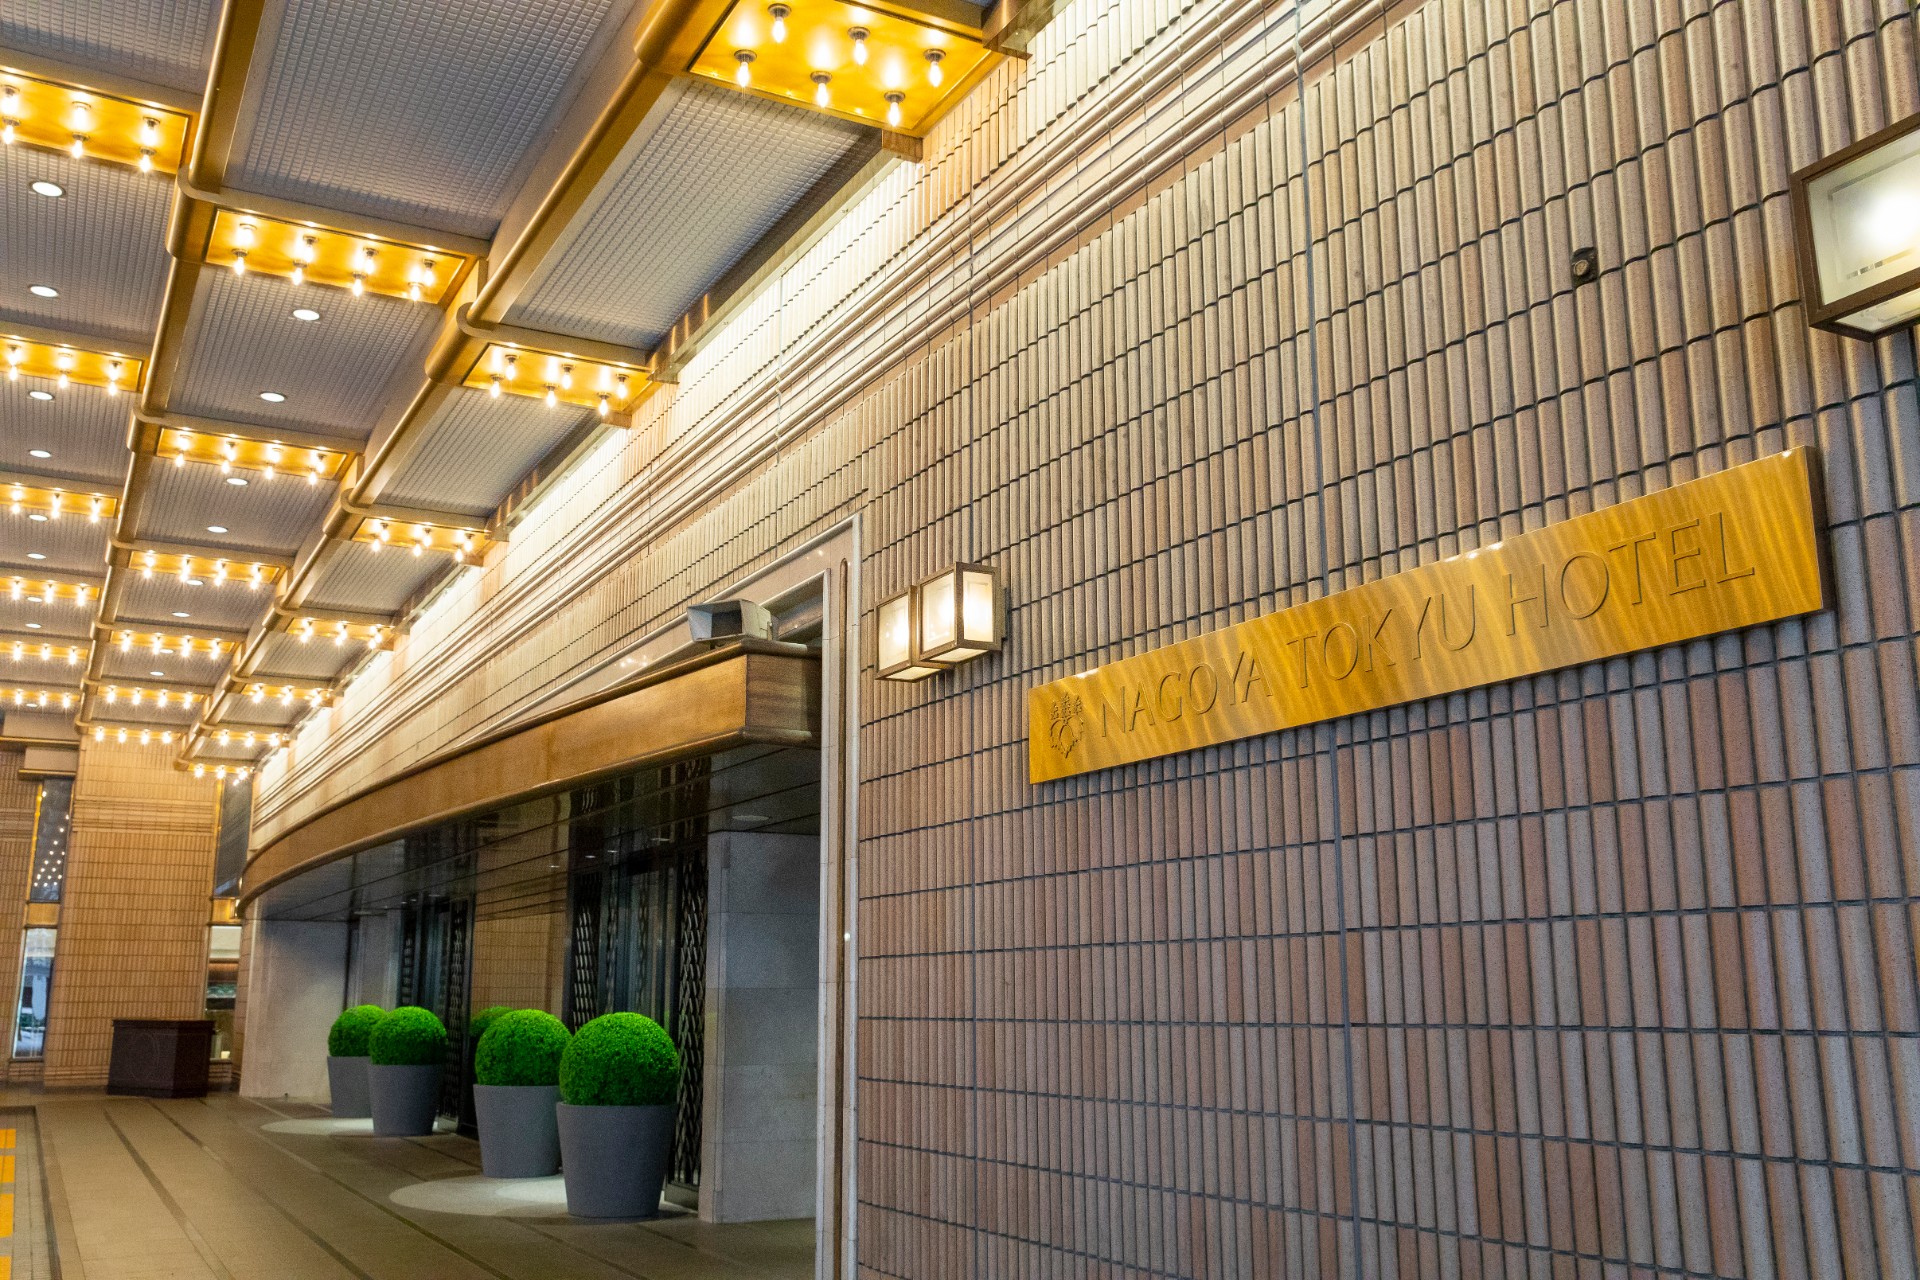 Nagoya Tokyu Hotel Entrance